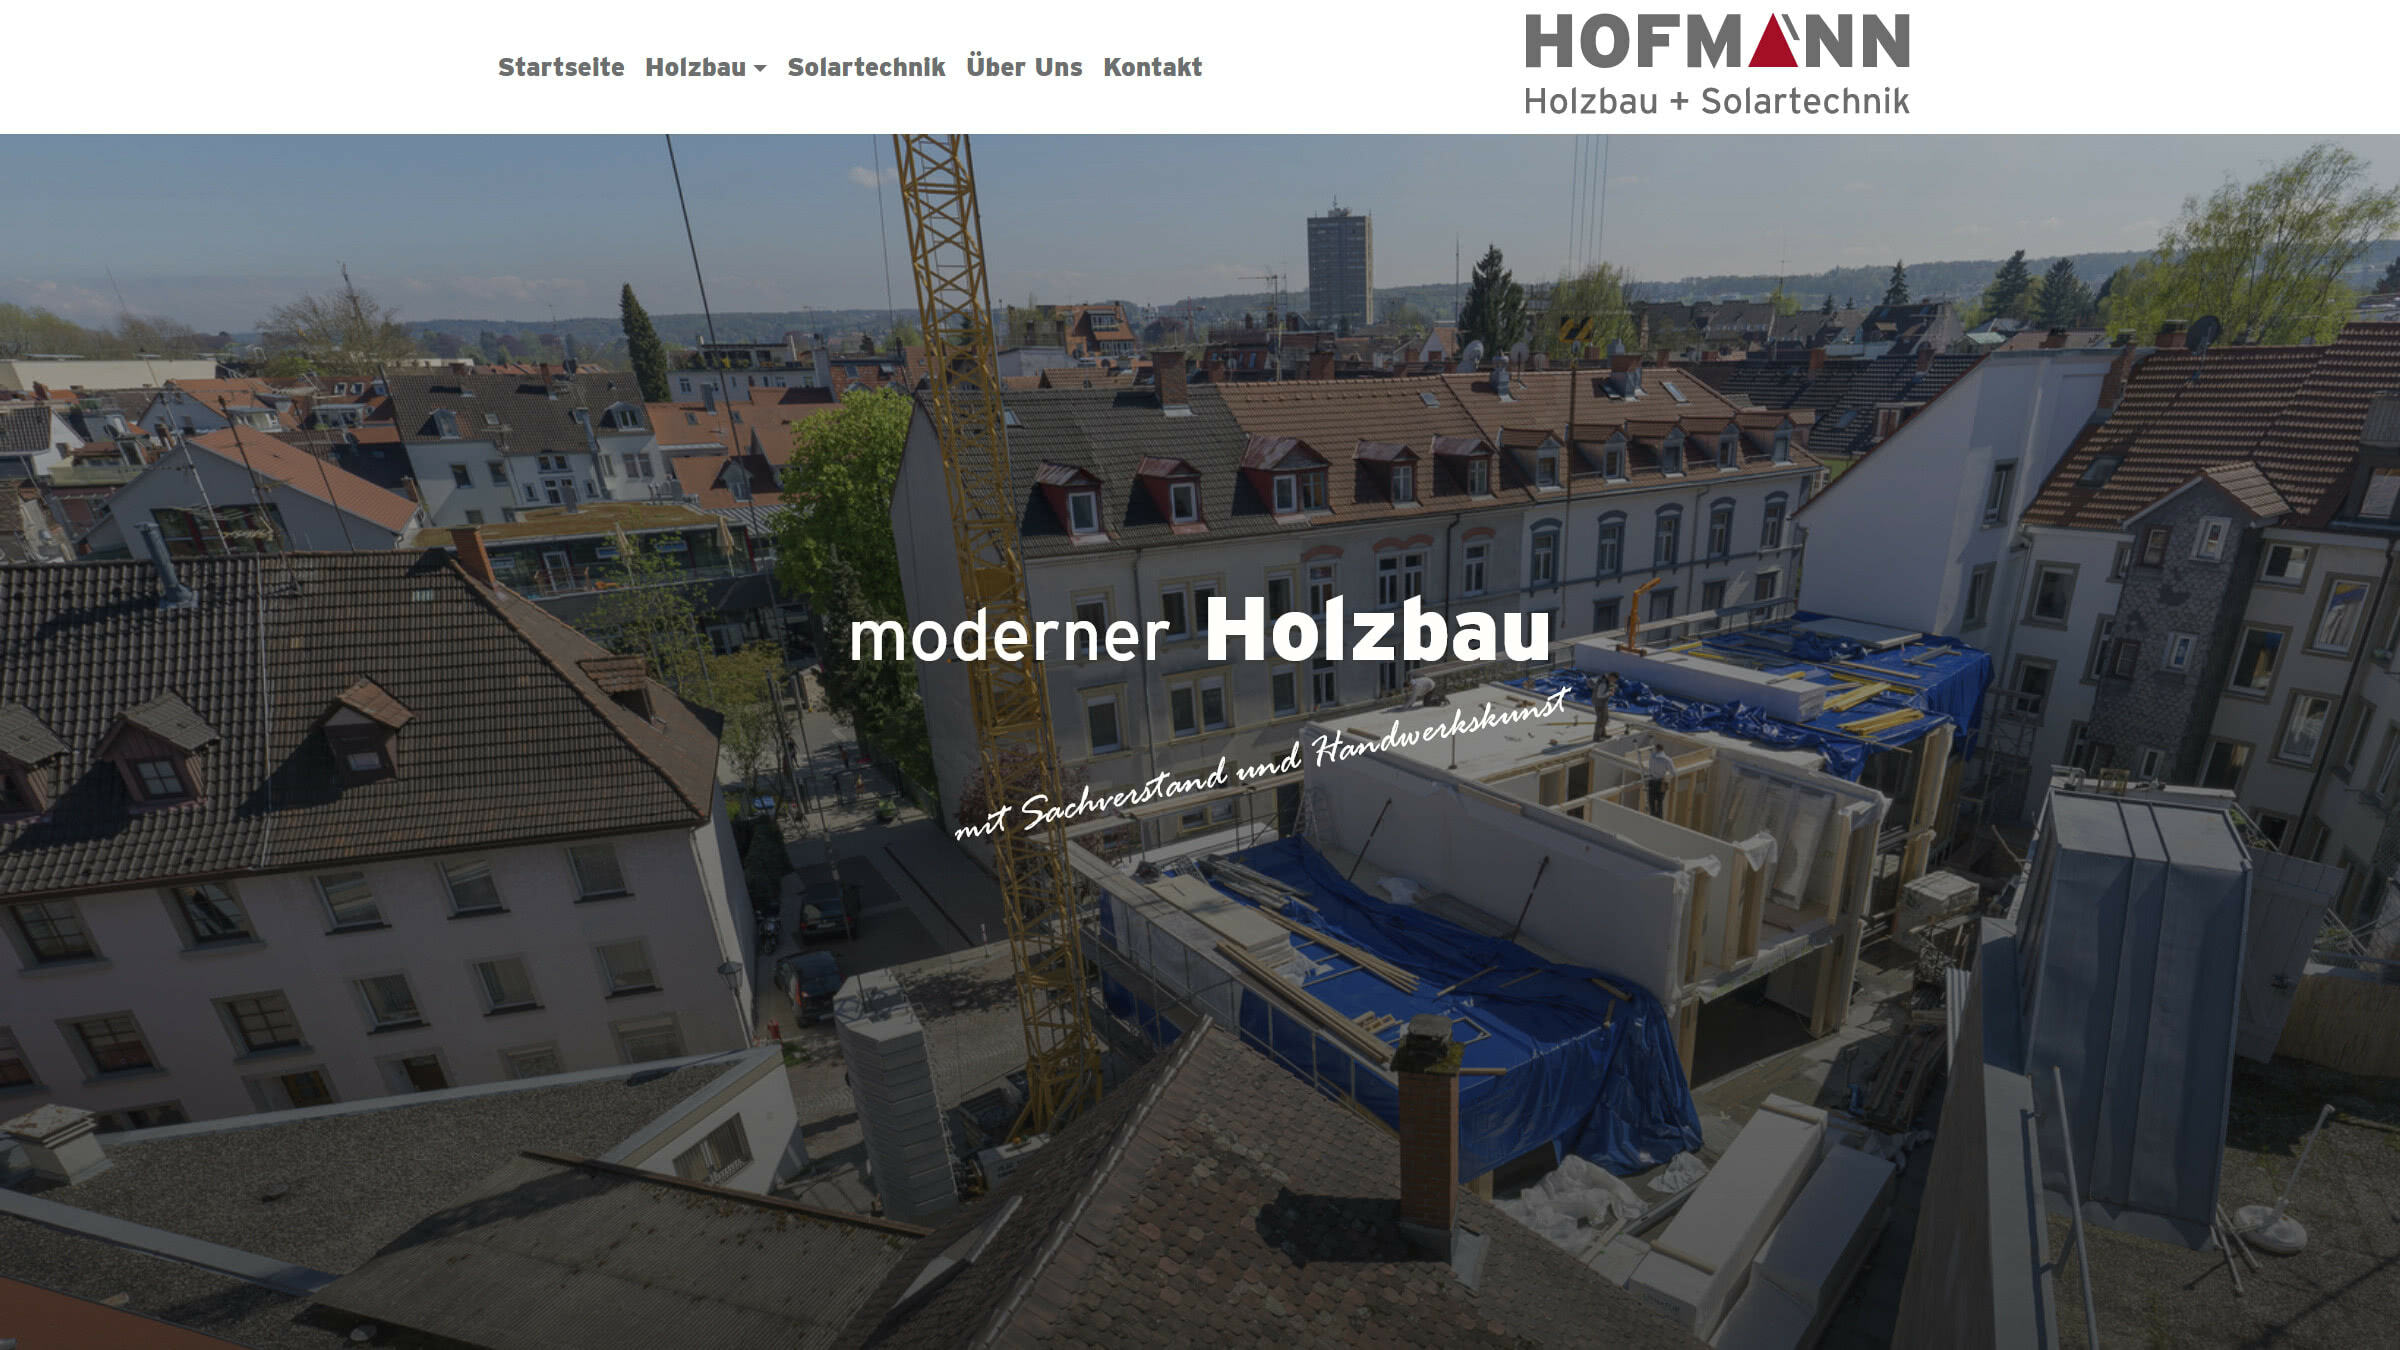 (c) Hofmann-holzbau.de